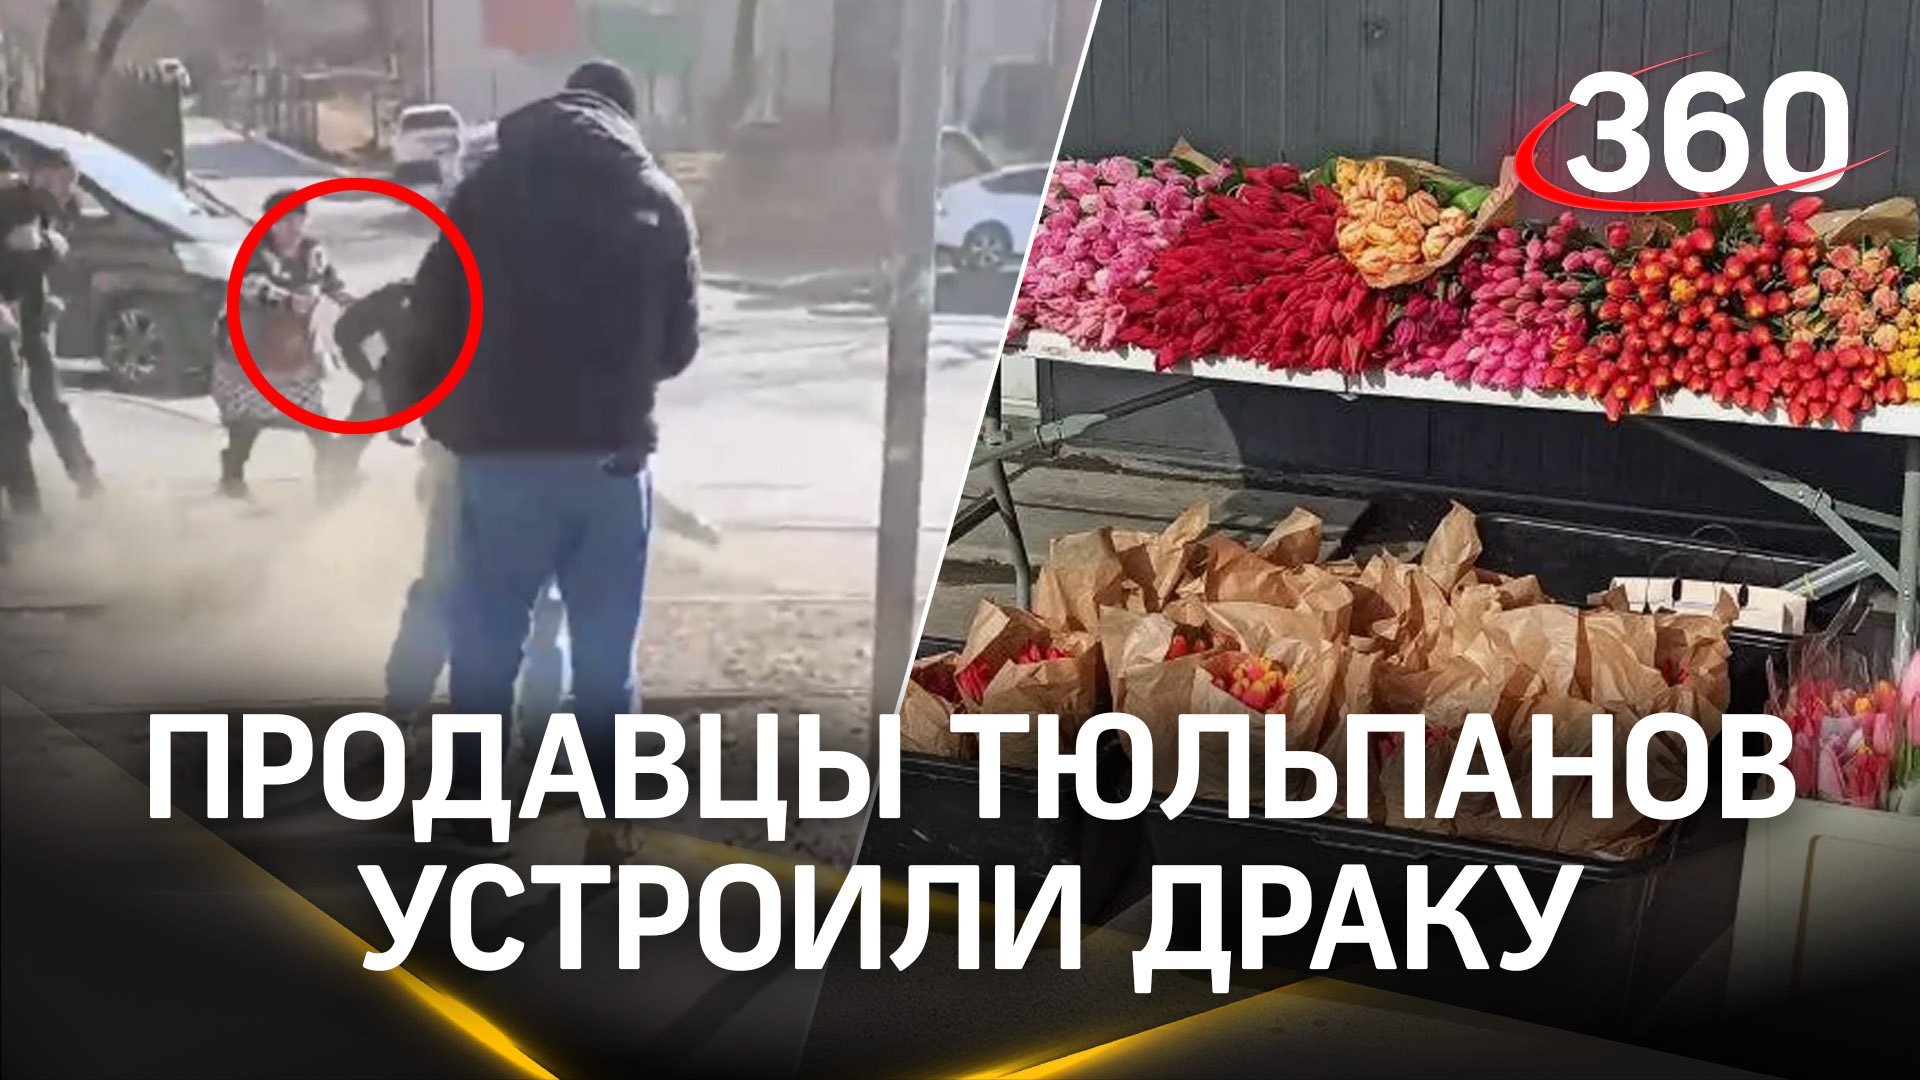 Тюльпановый конфликт: торговцы цветами устроили праздничную драку прямо на улице